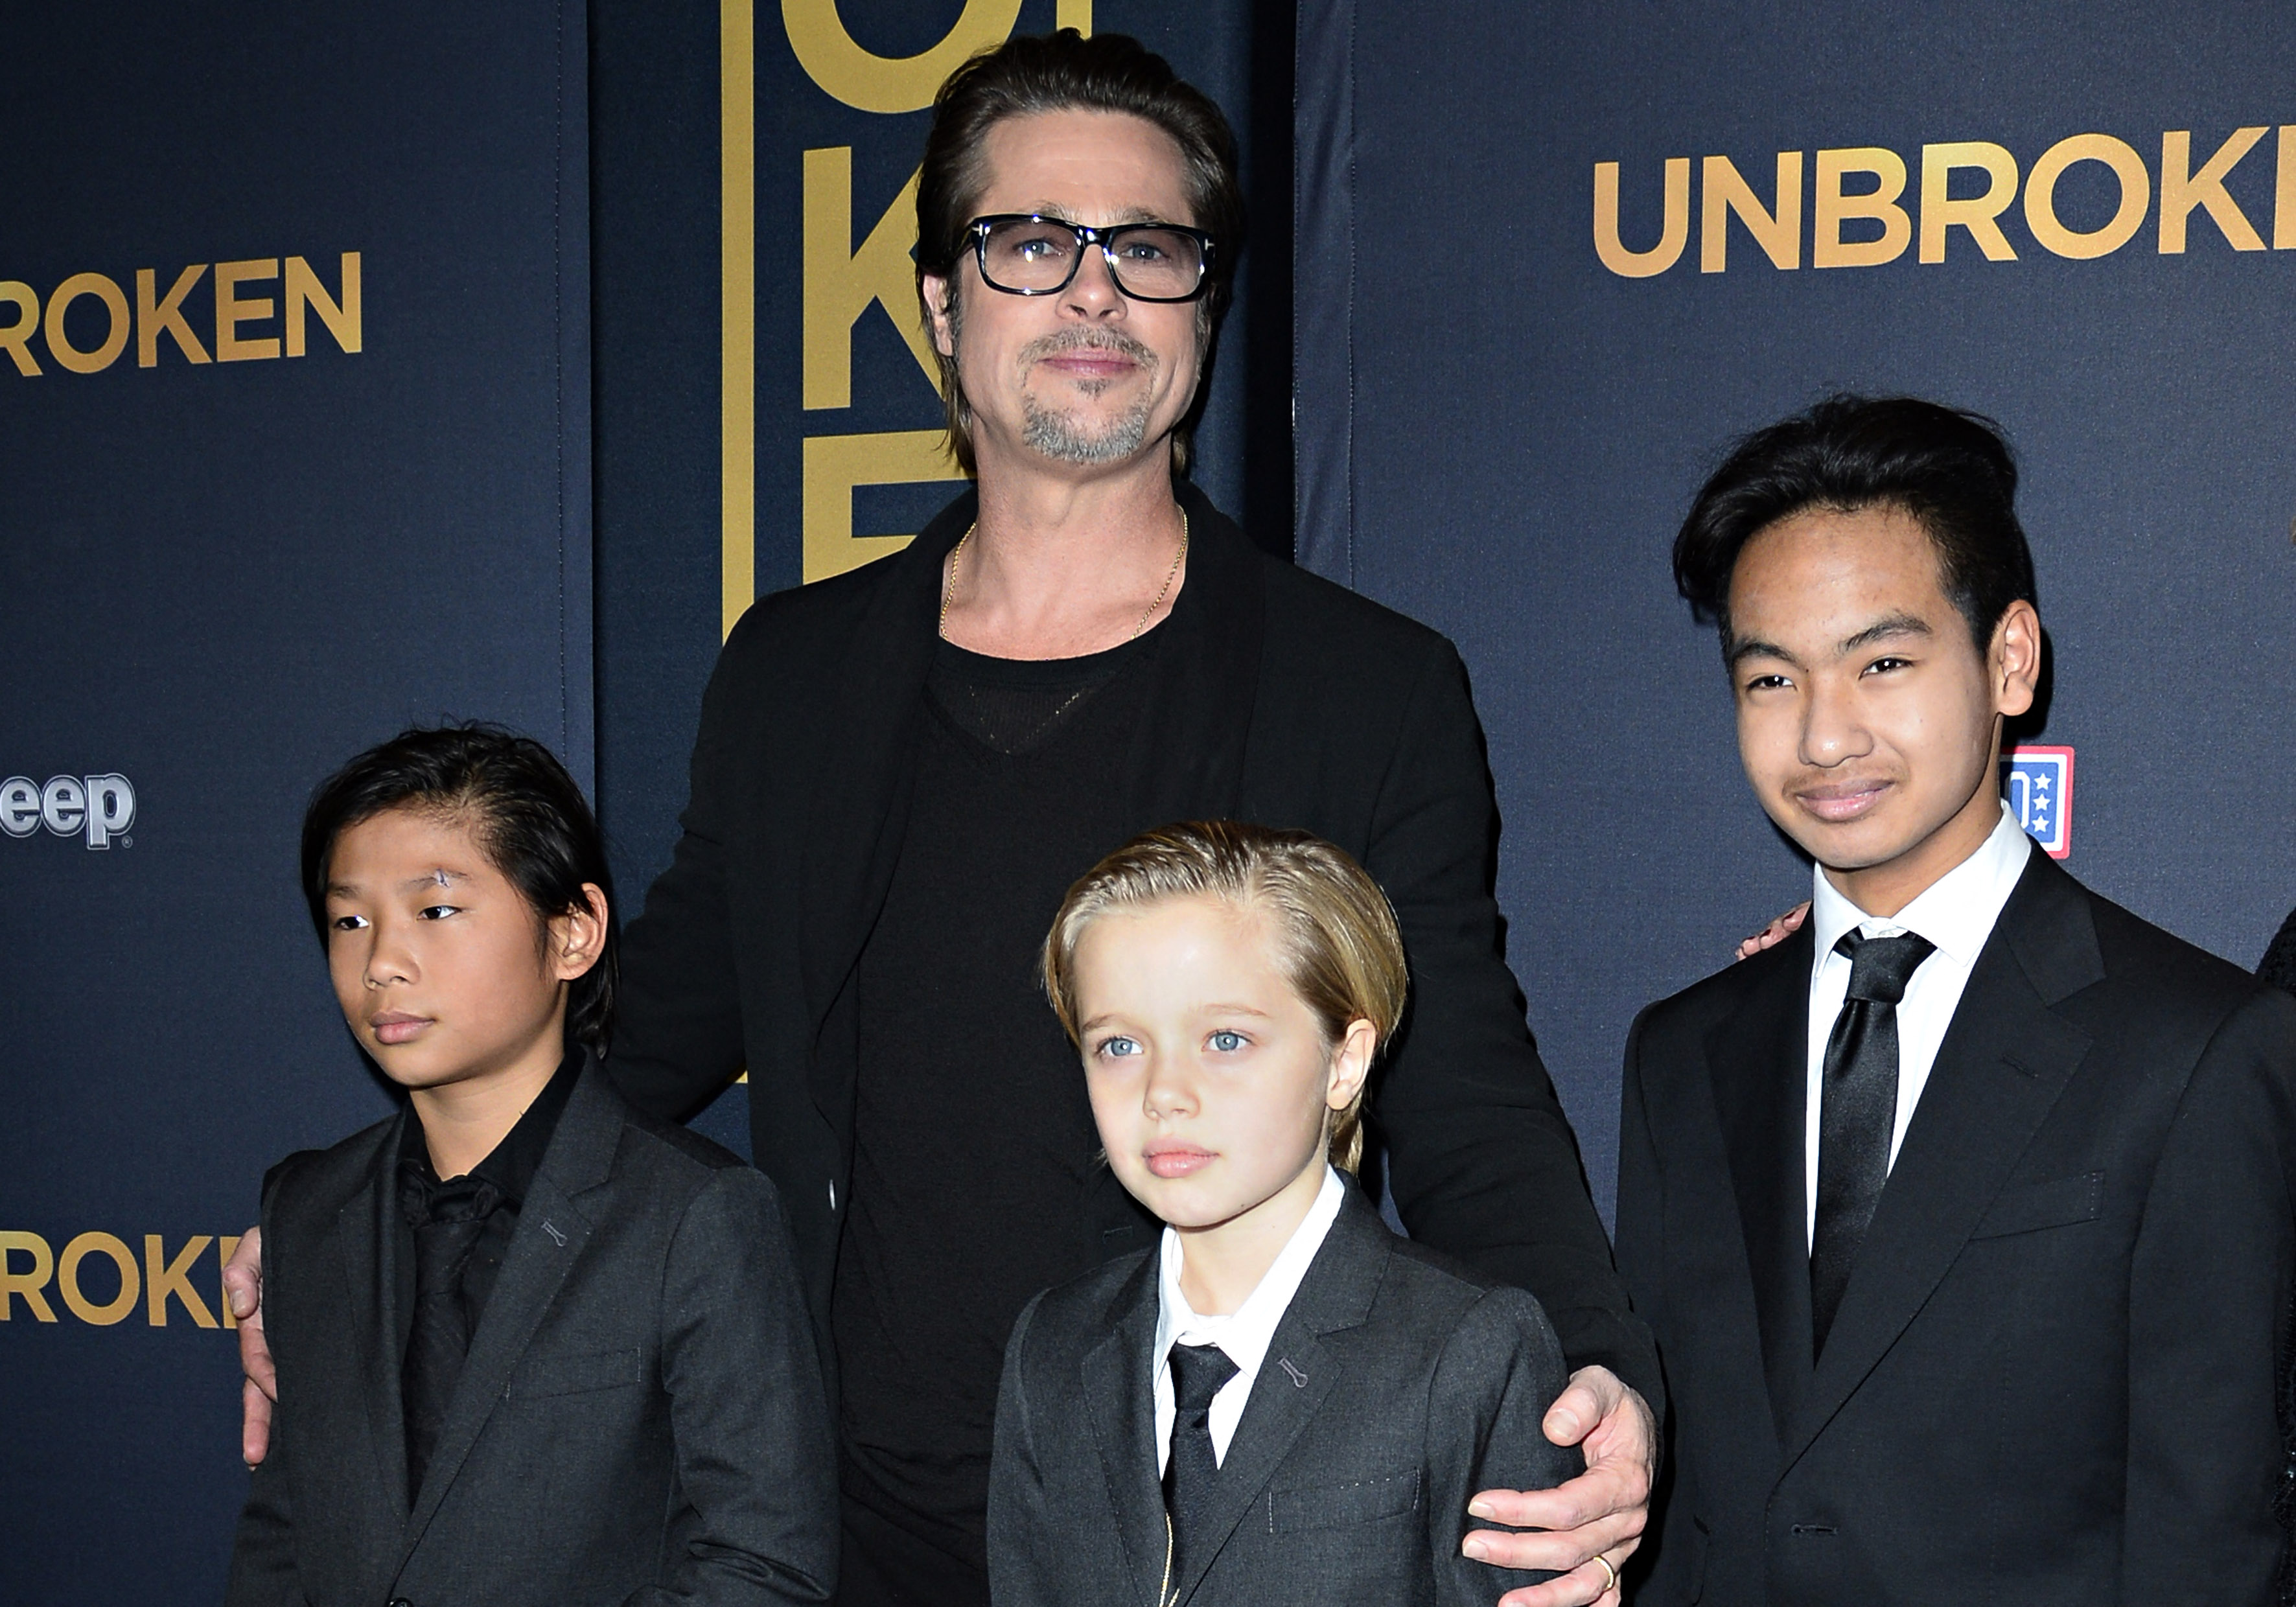 Brad Pitt con sus hijos Pax, Shiloh y Maddox en el estreno de "Unbroken", en Los Ángeles en 2014 | Fuente: Getty Images